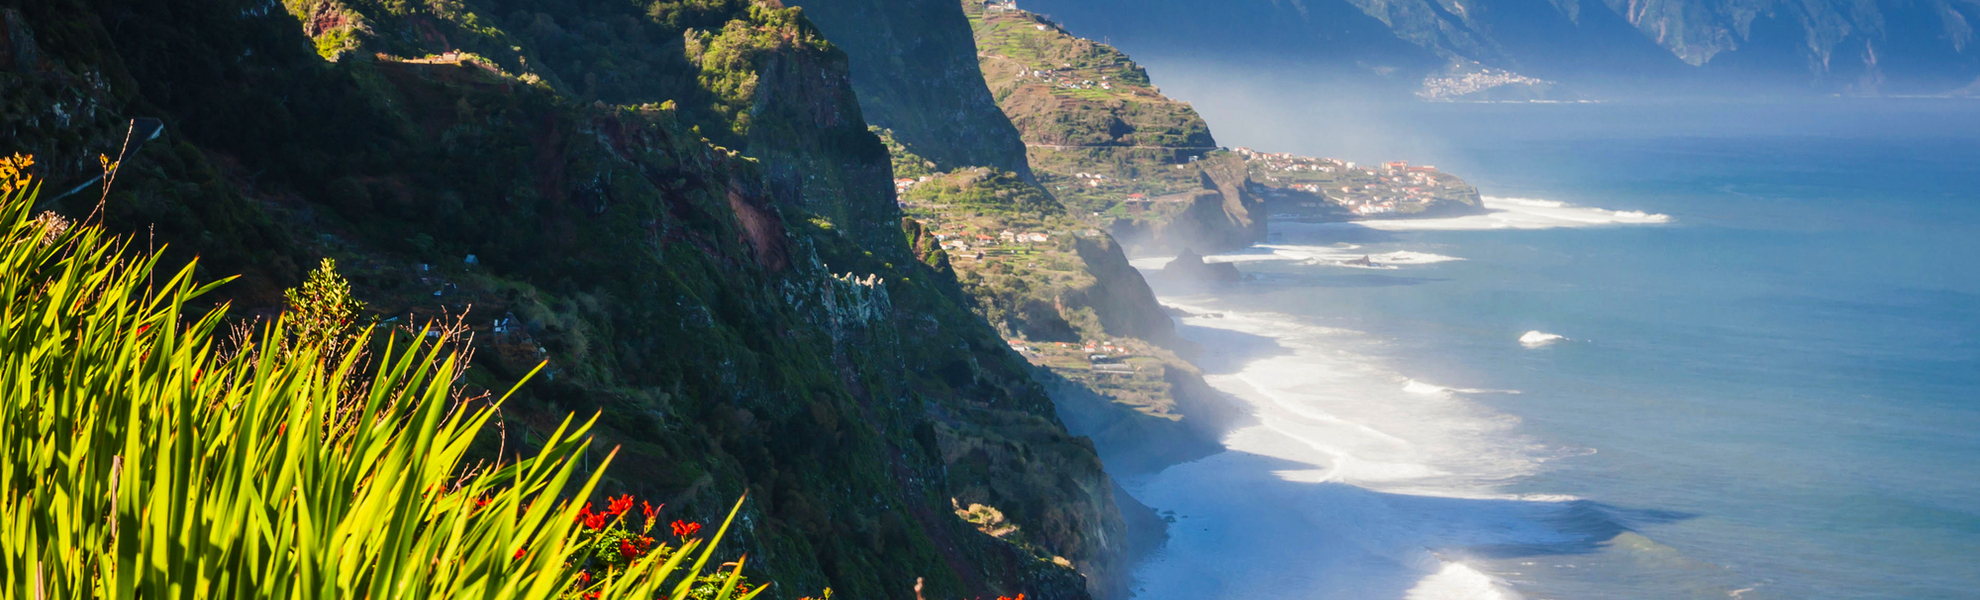 Nordküste in der Nähe von Boaventura auf Madeira